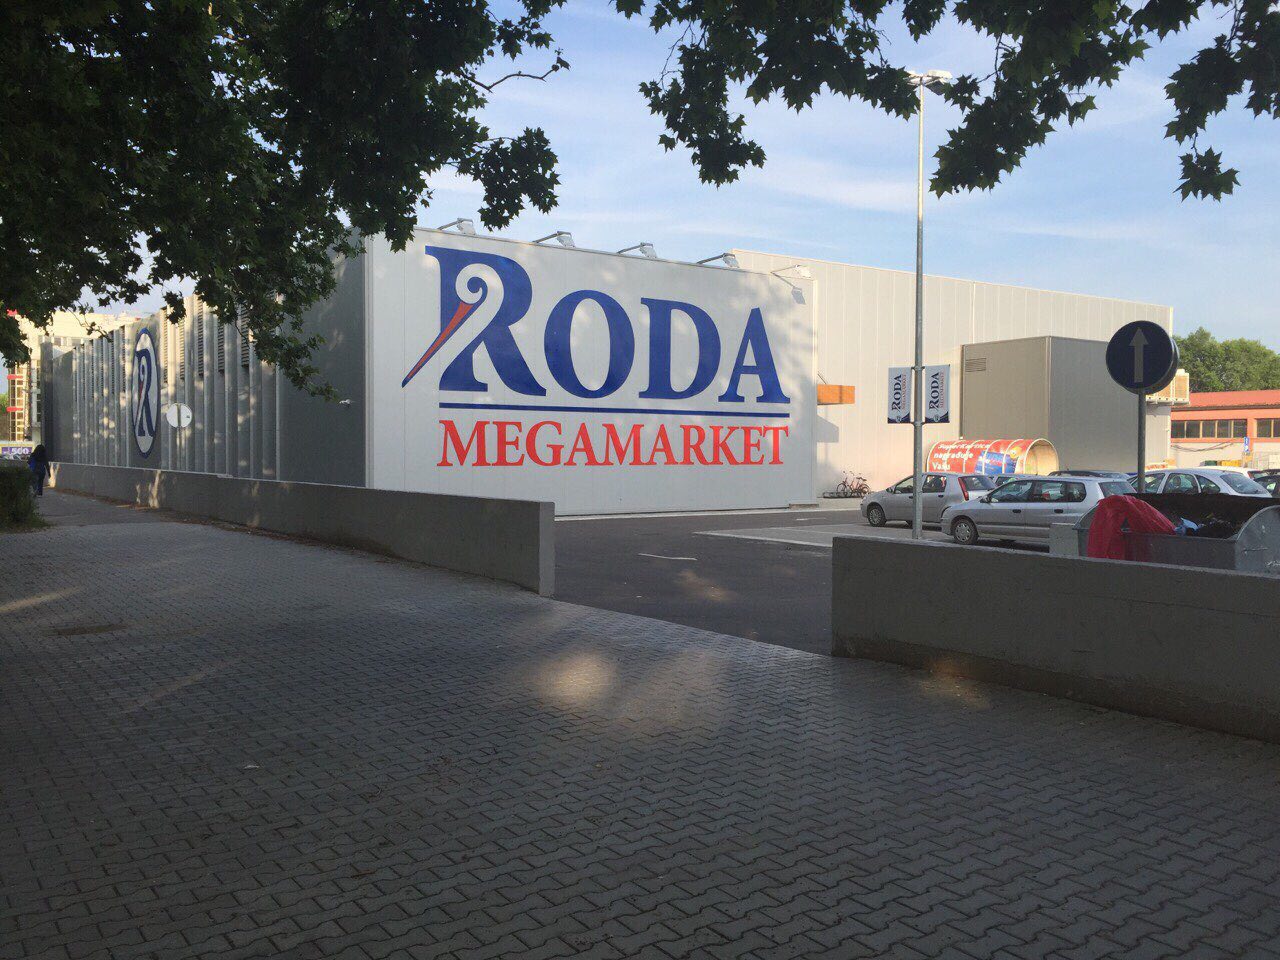 Megamarket Roda in Novi Sad